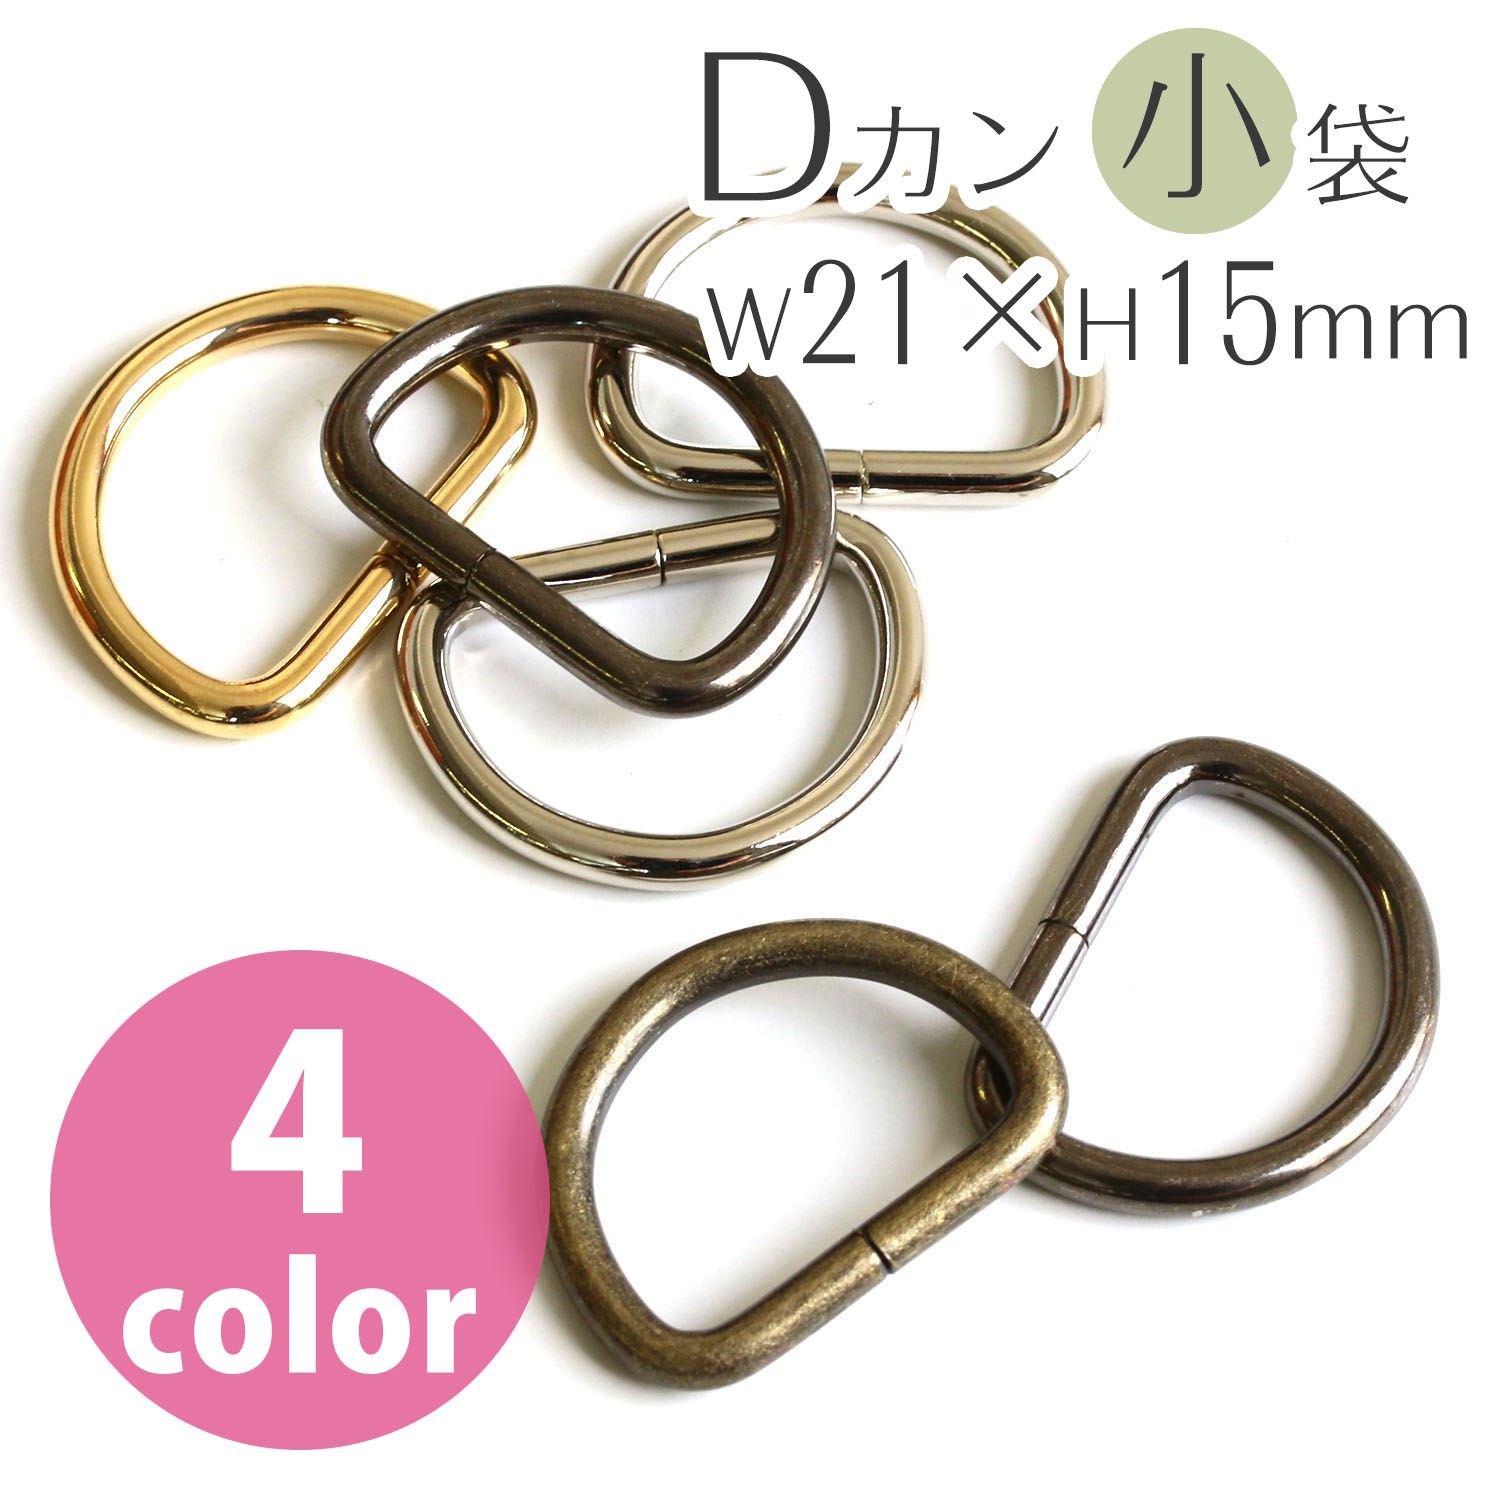 D-Ring 21 x 15mm"", diameter 3mm (bag)